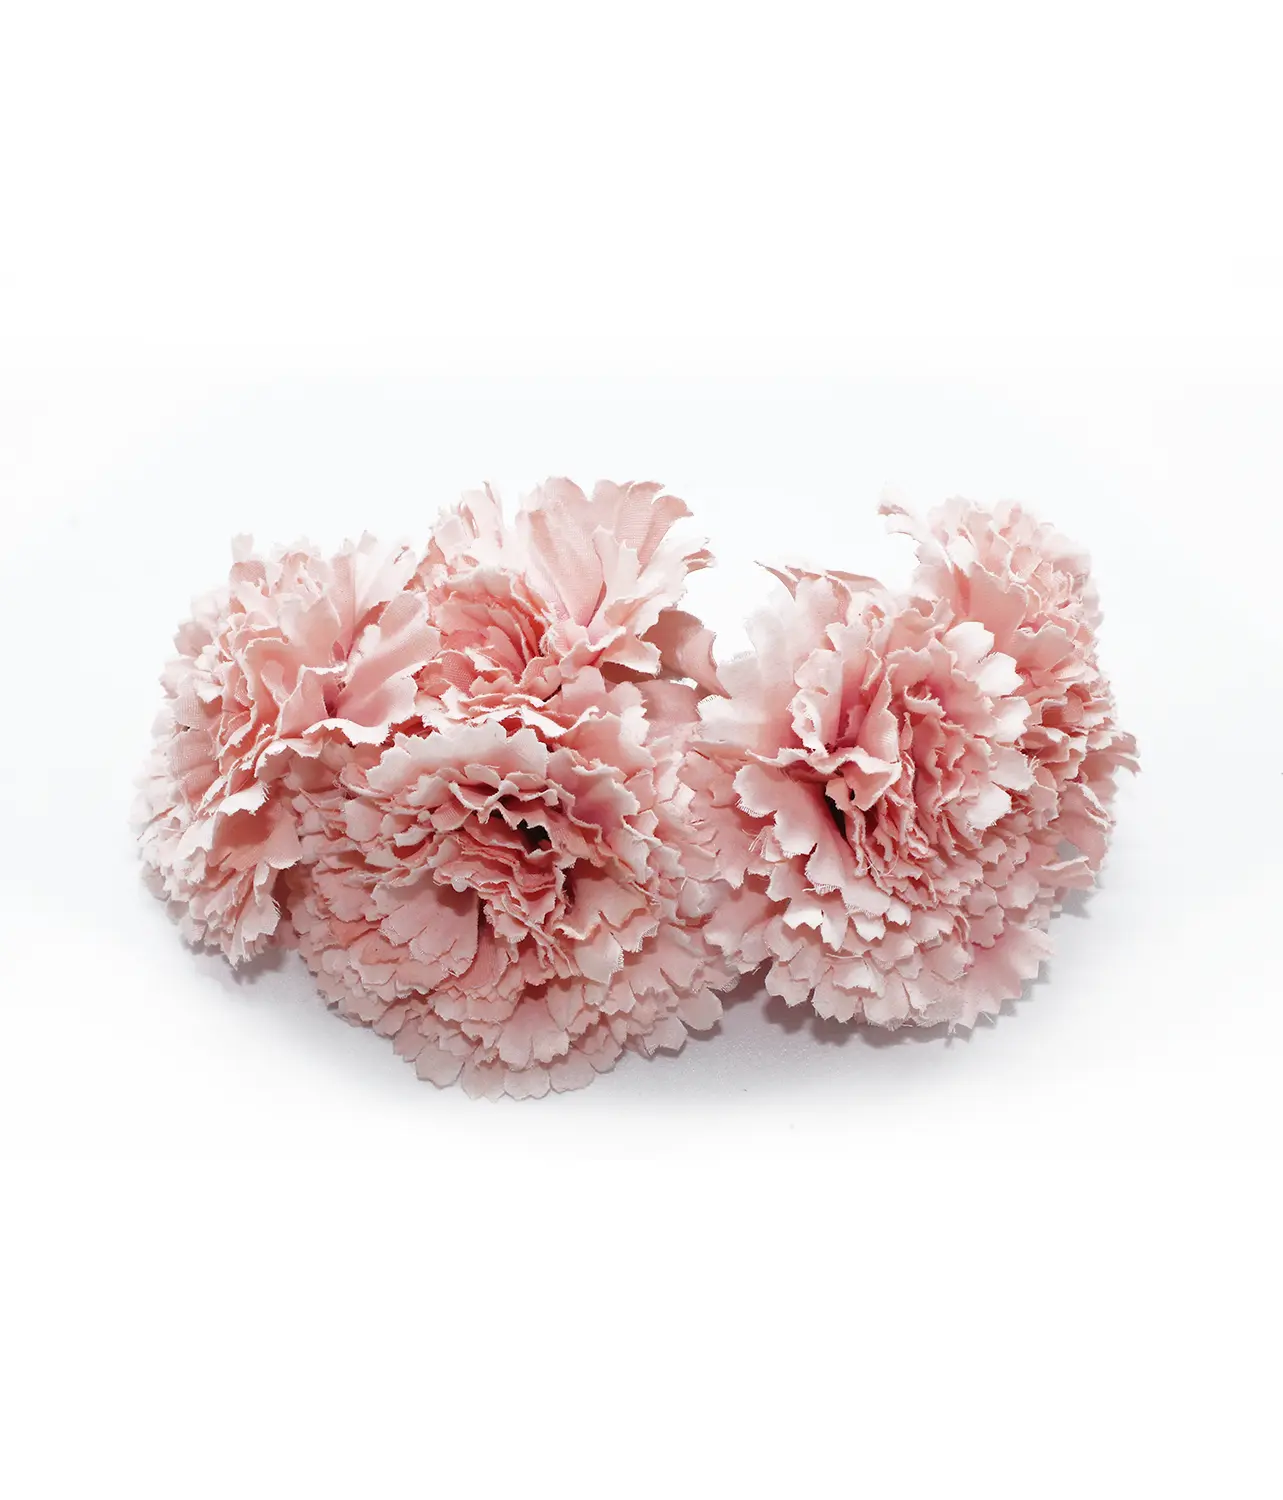 Corona de 5 claveles para vestirse de flamenca en color rosa claro. El complemento de flamenca que necesitas.